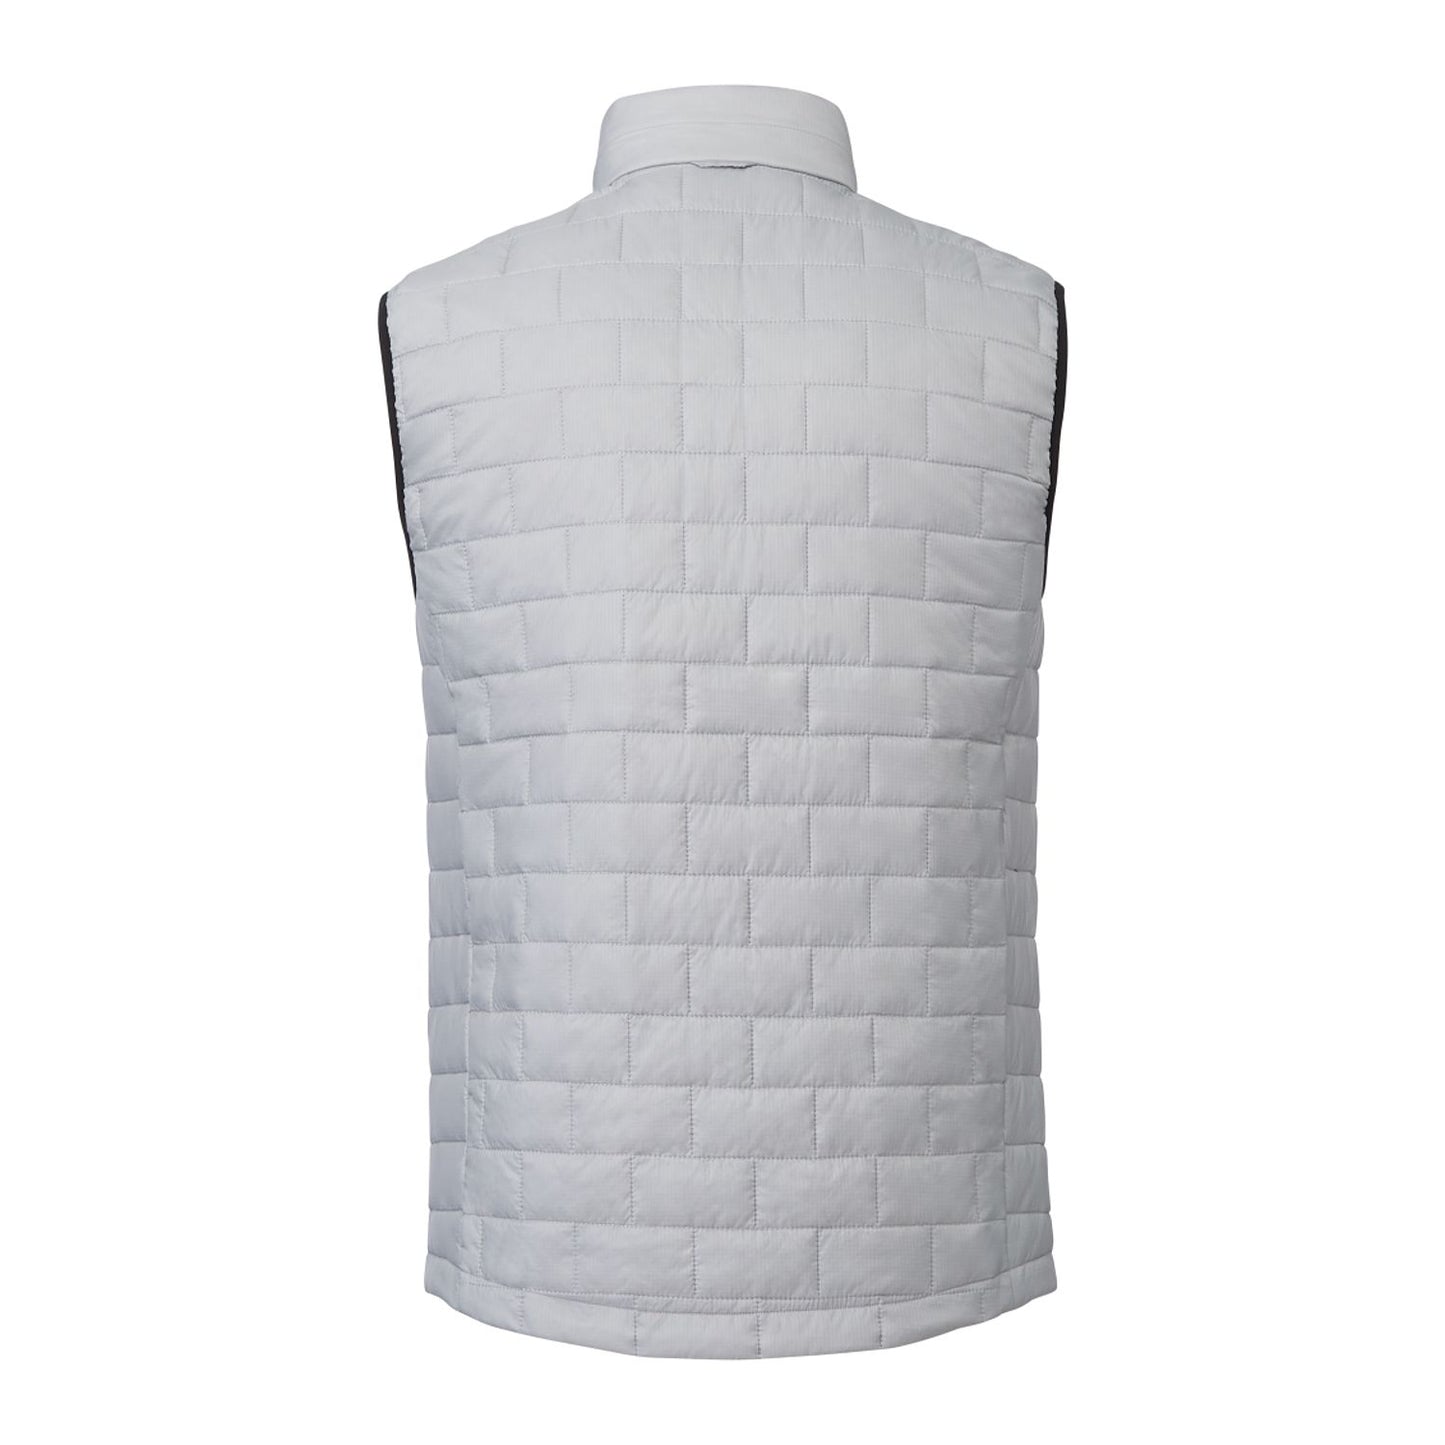 Men's TELLURIDE Lightweight Packable Insulated Puffer Vest